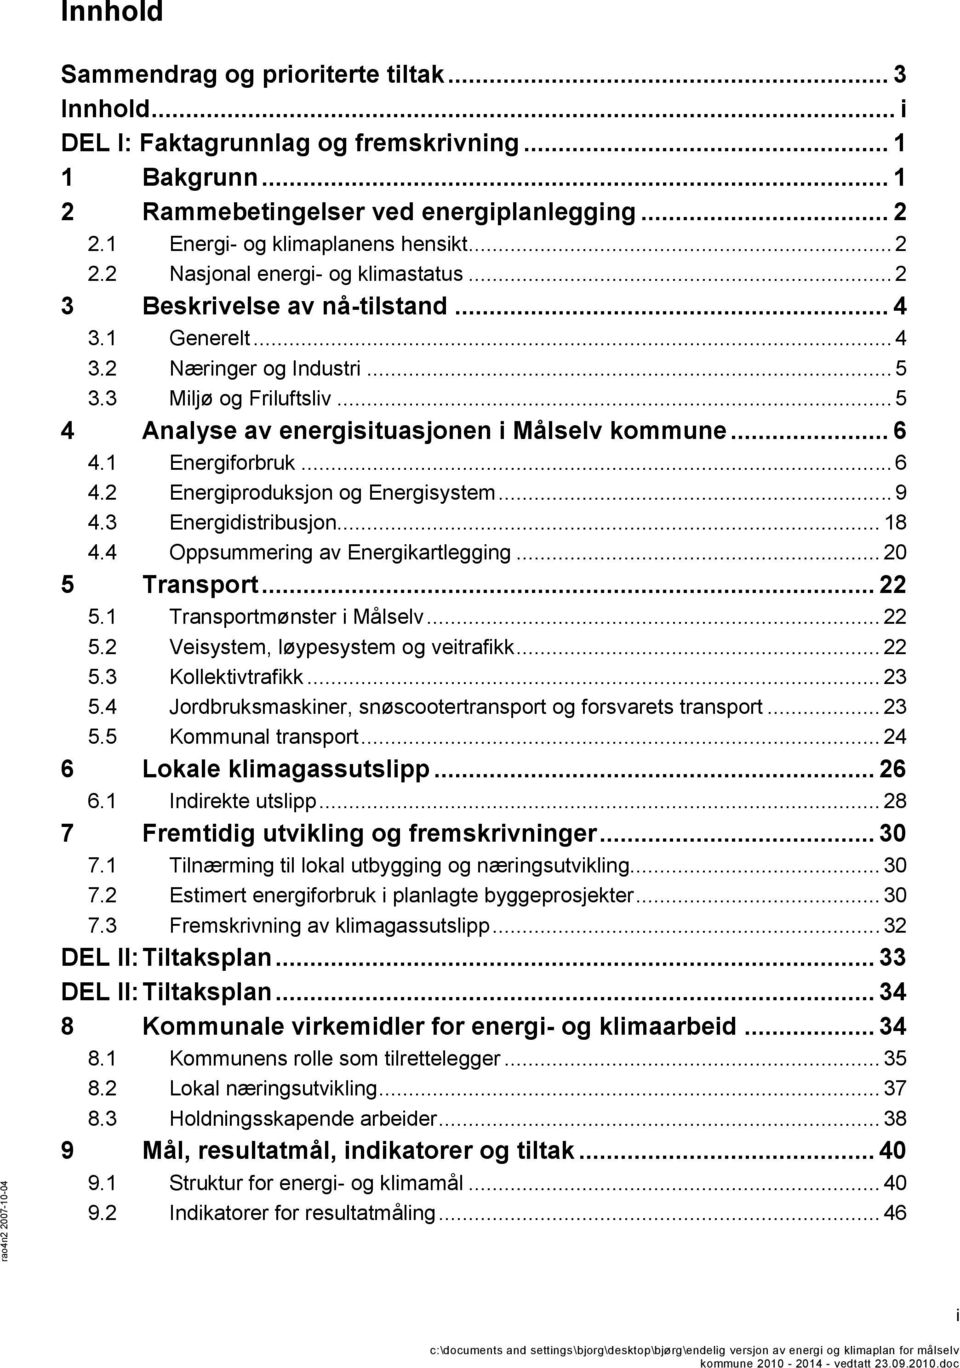 .. 5 4 Analyse av energisituasjonen i Målselv kommune... 6 4.1 Energiforbruk... 6 4.2 Energiproduksjon og Energisystem... 9 4.3 Energidistribusjon... 18 4.4 Oppsummering av Energikartlegging.